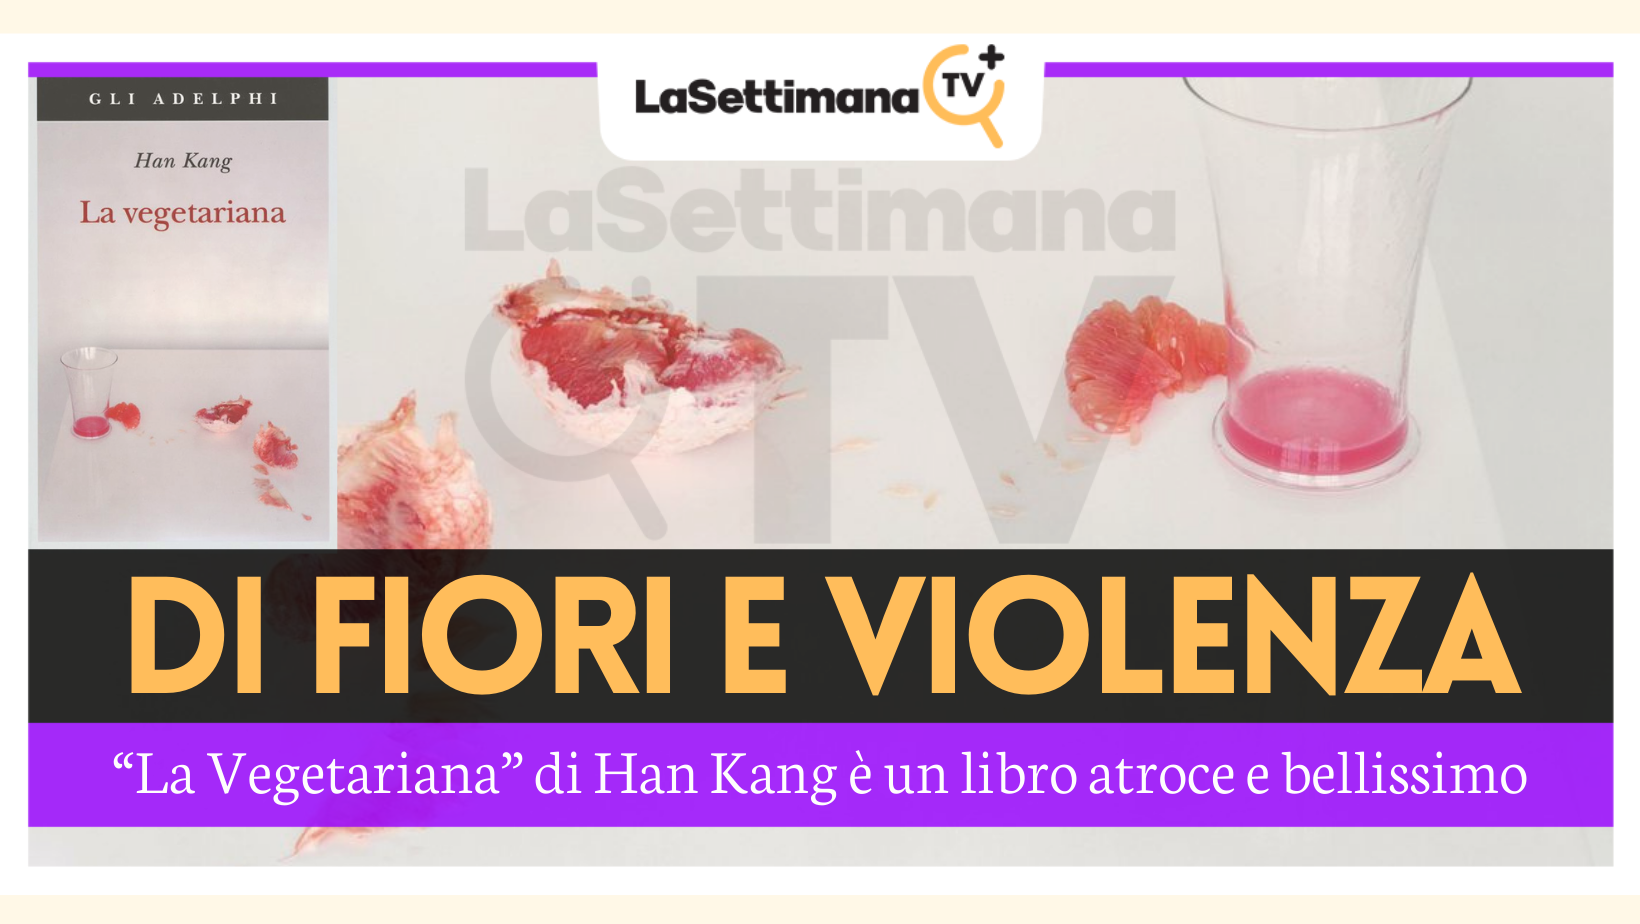 Di fiori e violenza: “La Vegetariana” di Han Kang è un libro atroce e  bellissimo - recensione - La Settimana TV